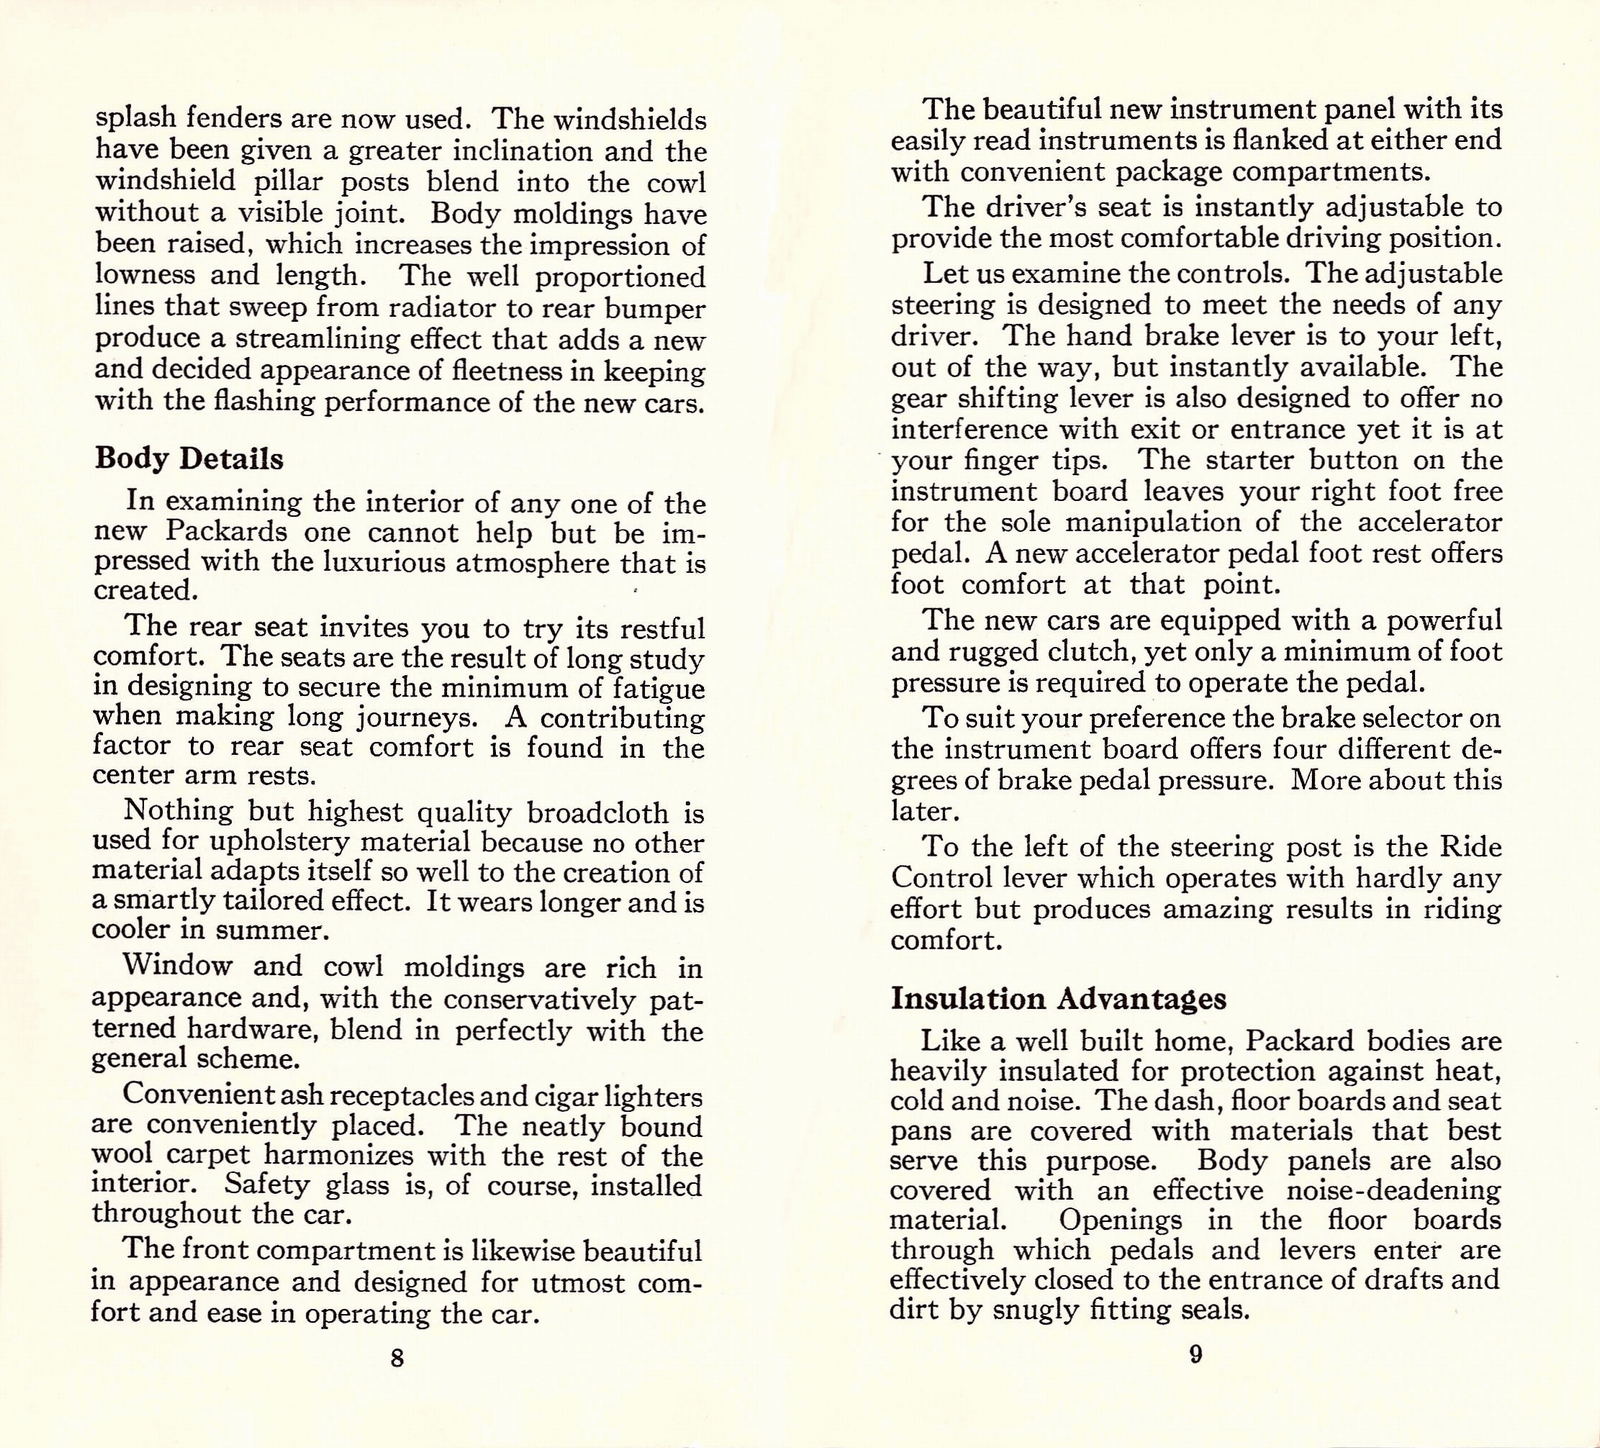 n_1933 Packard Facts Booklet-08-09.jpg